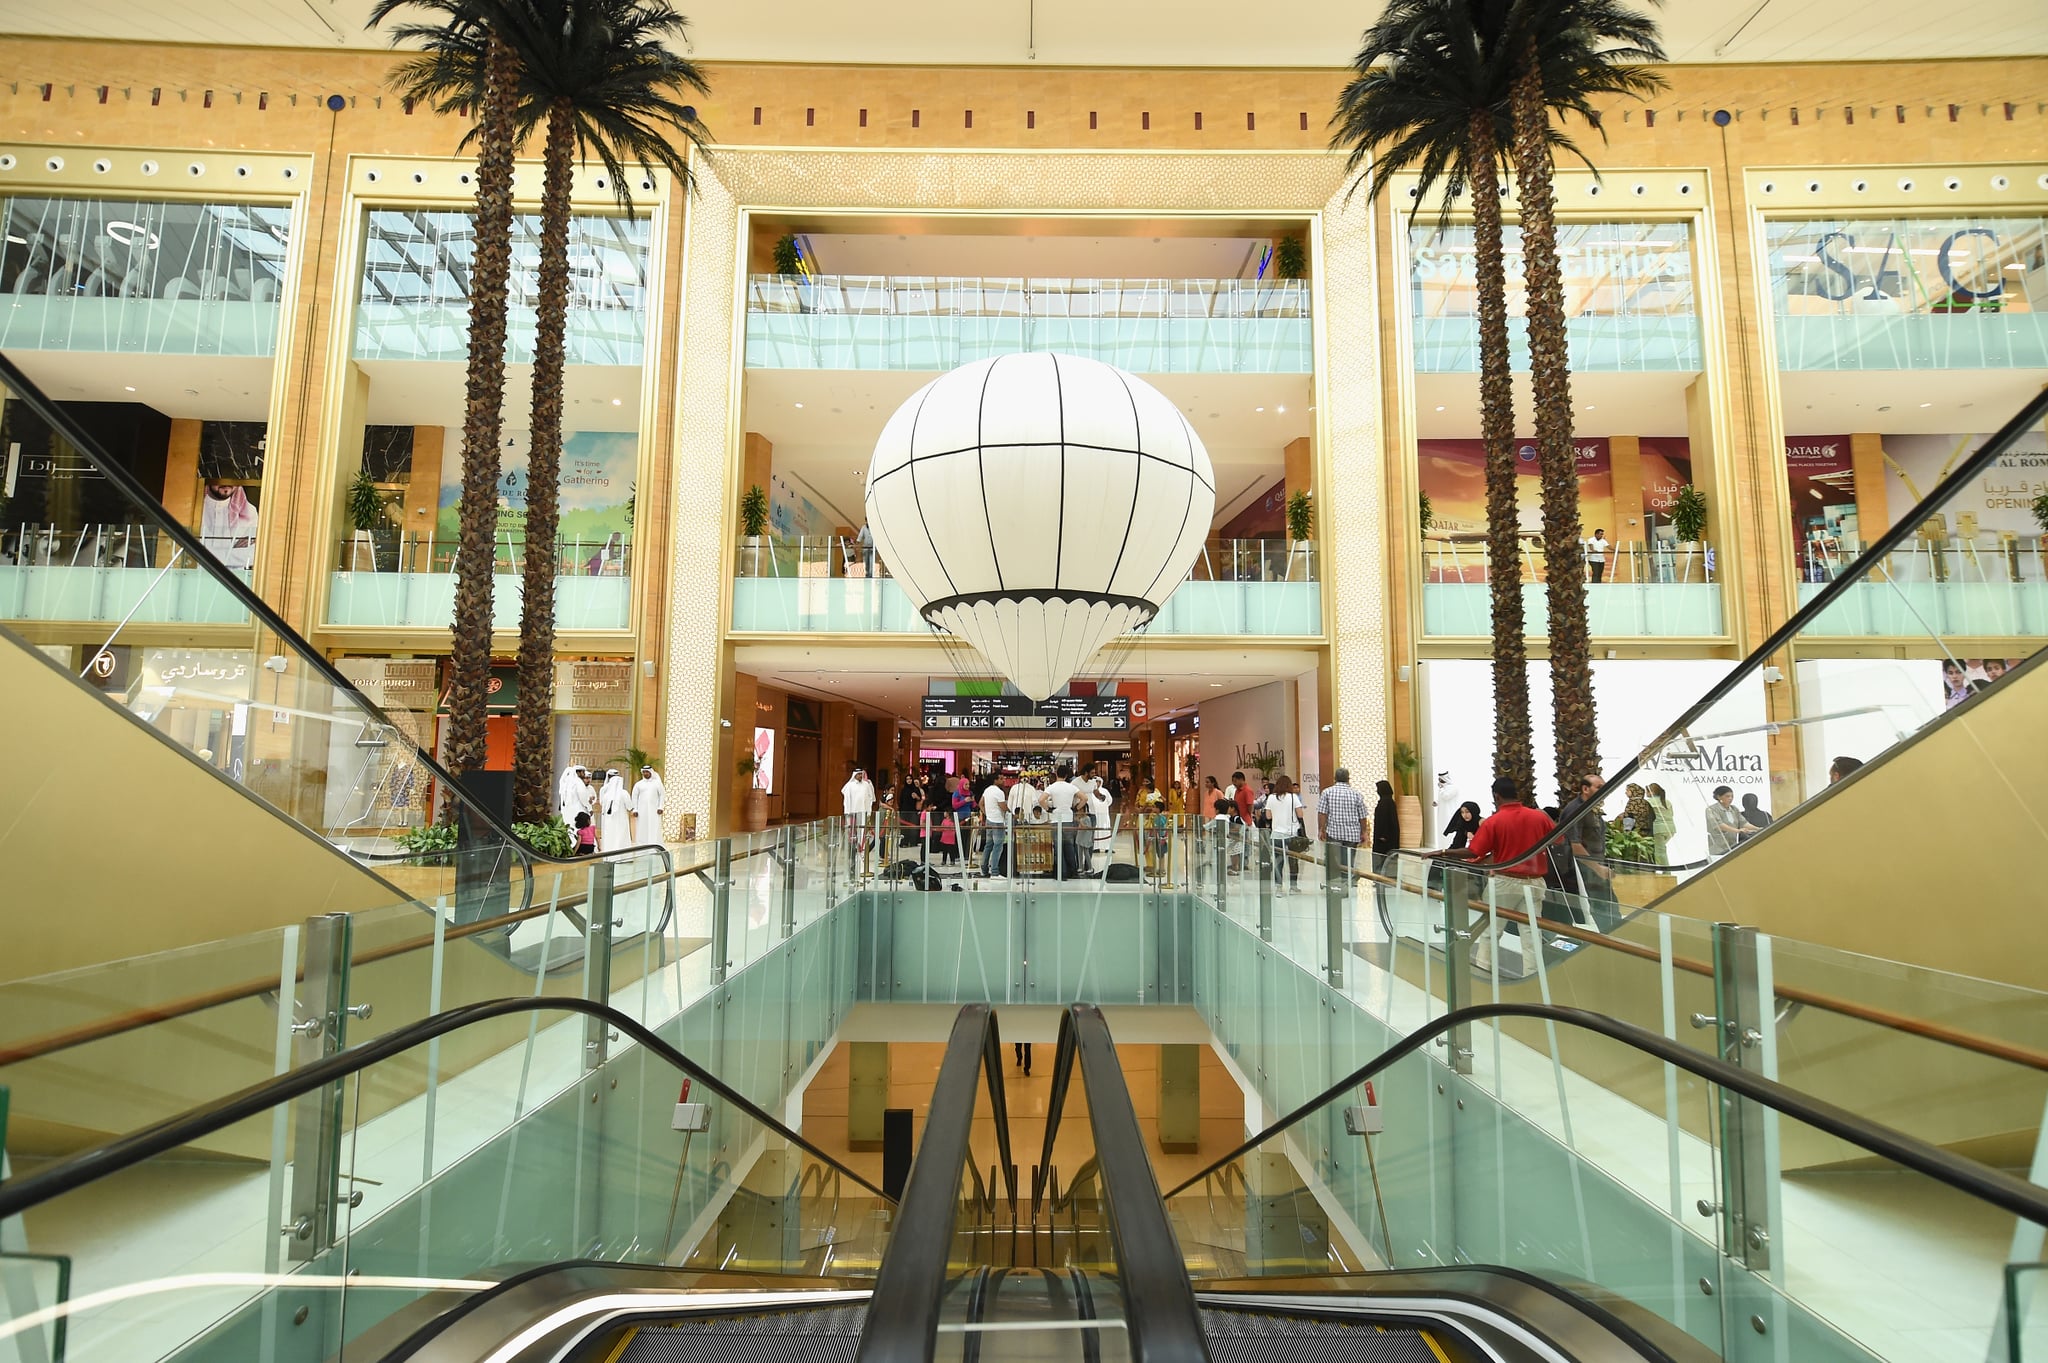 travel agency in grand mall qatar